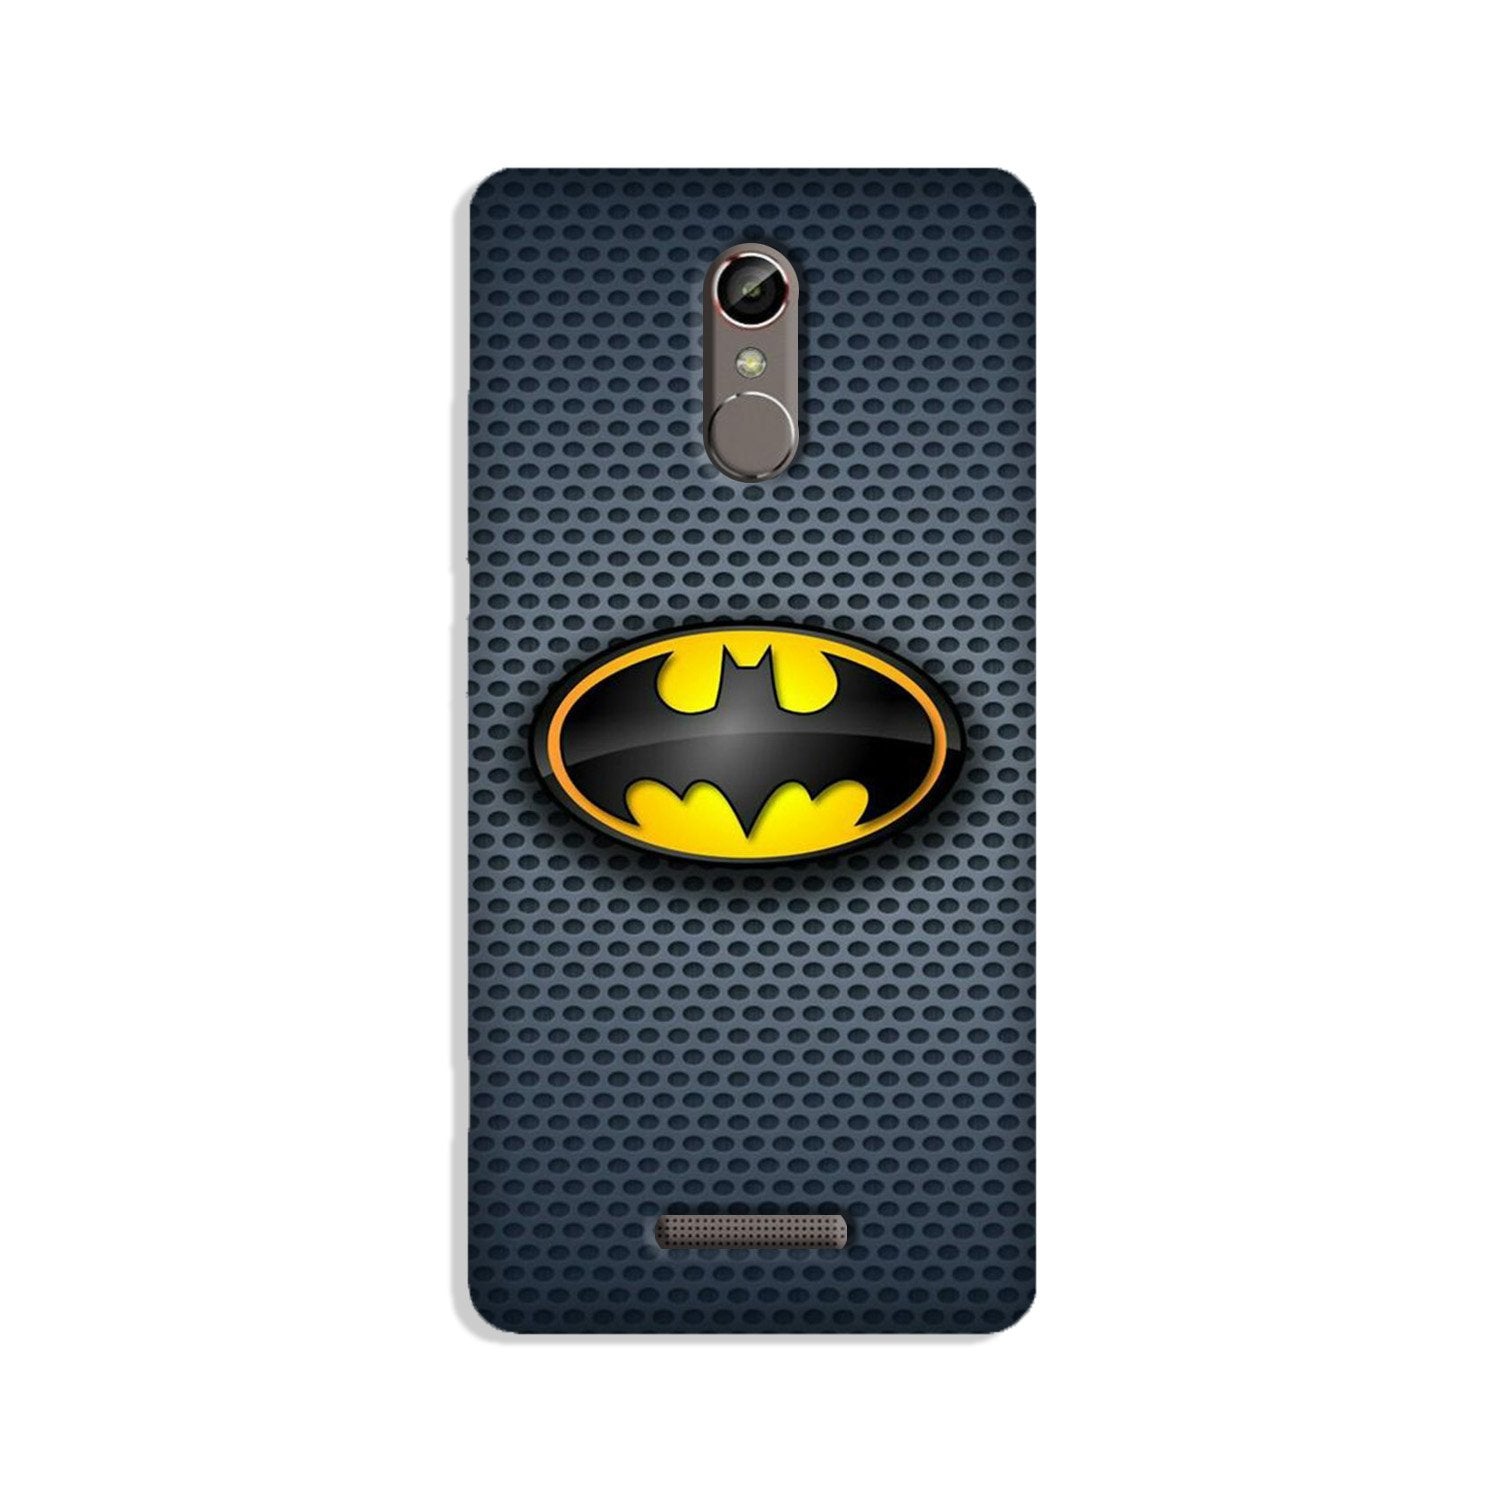 Batman Case for Gionee S6s (Design No. 244)